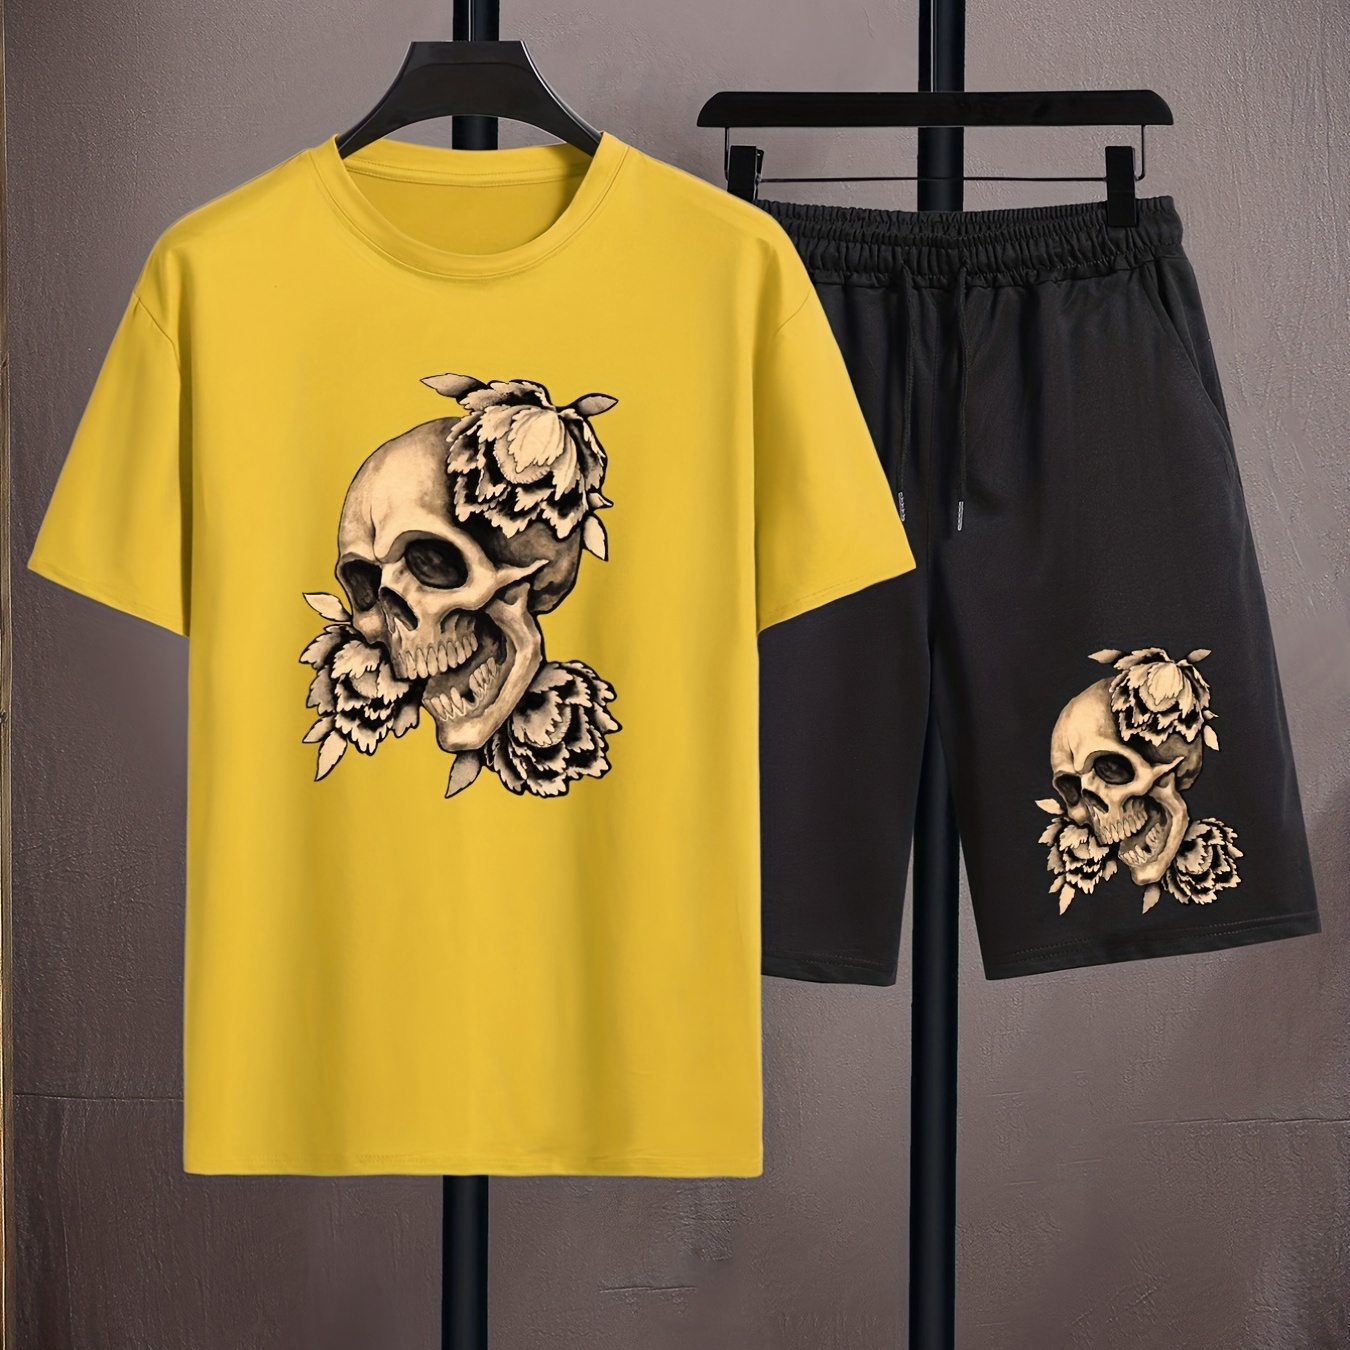 

Skull Print, Men's 2pcs, Casual T-shirt And Loose Drawstring Shorts For Summer